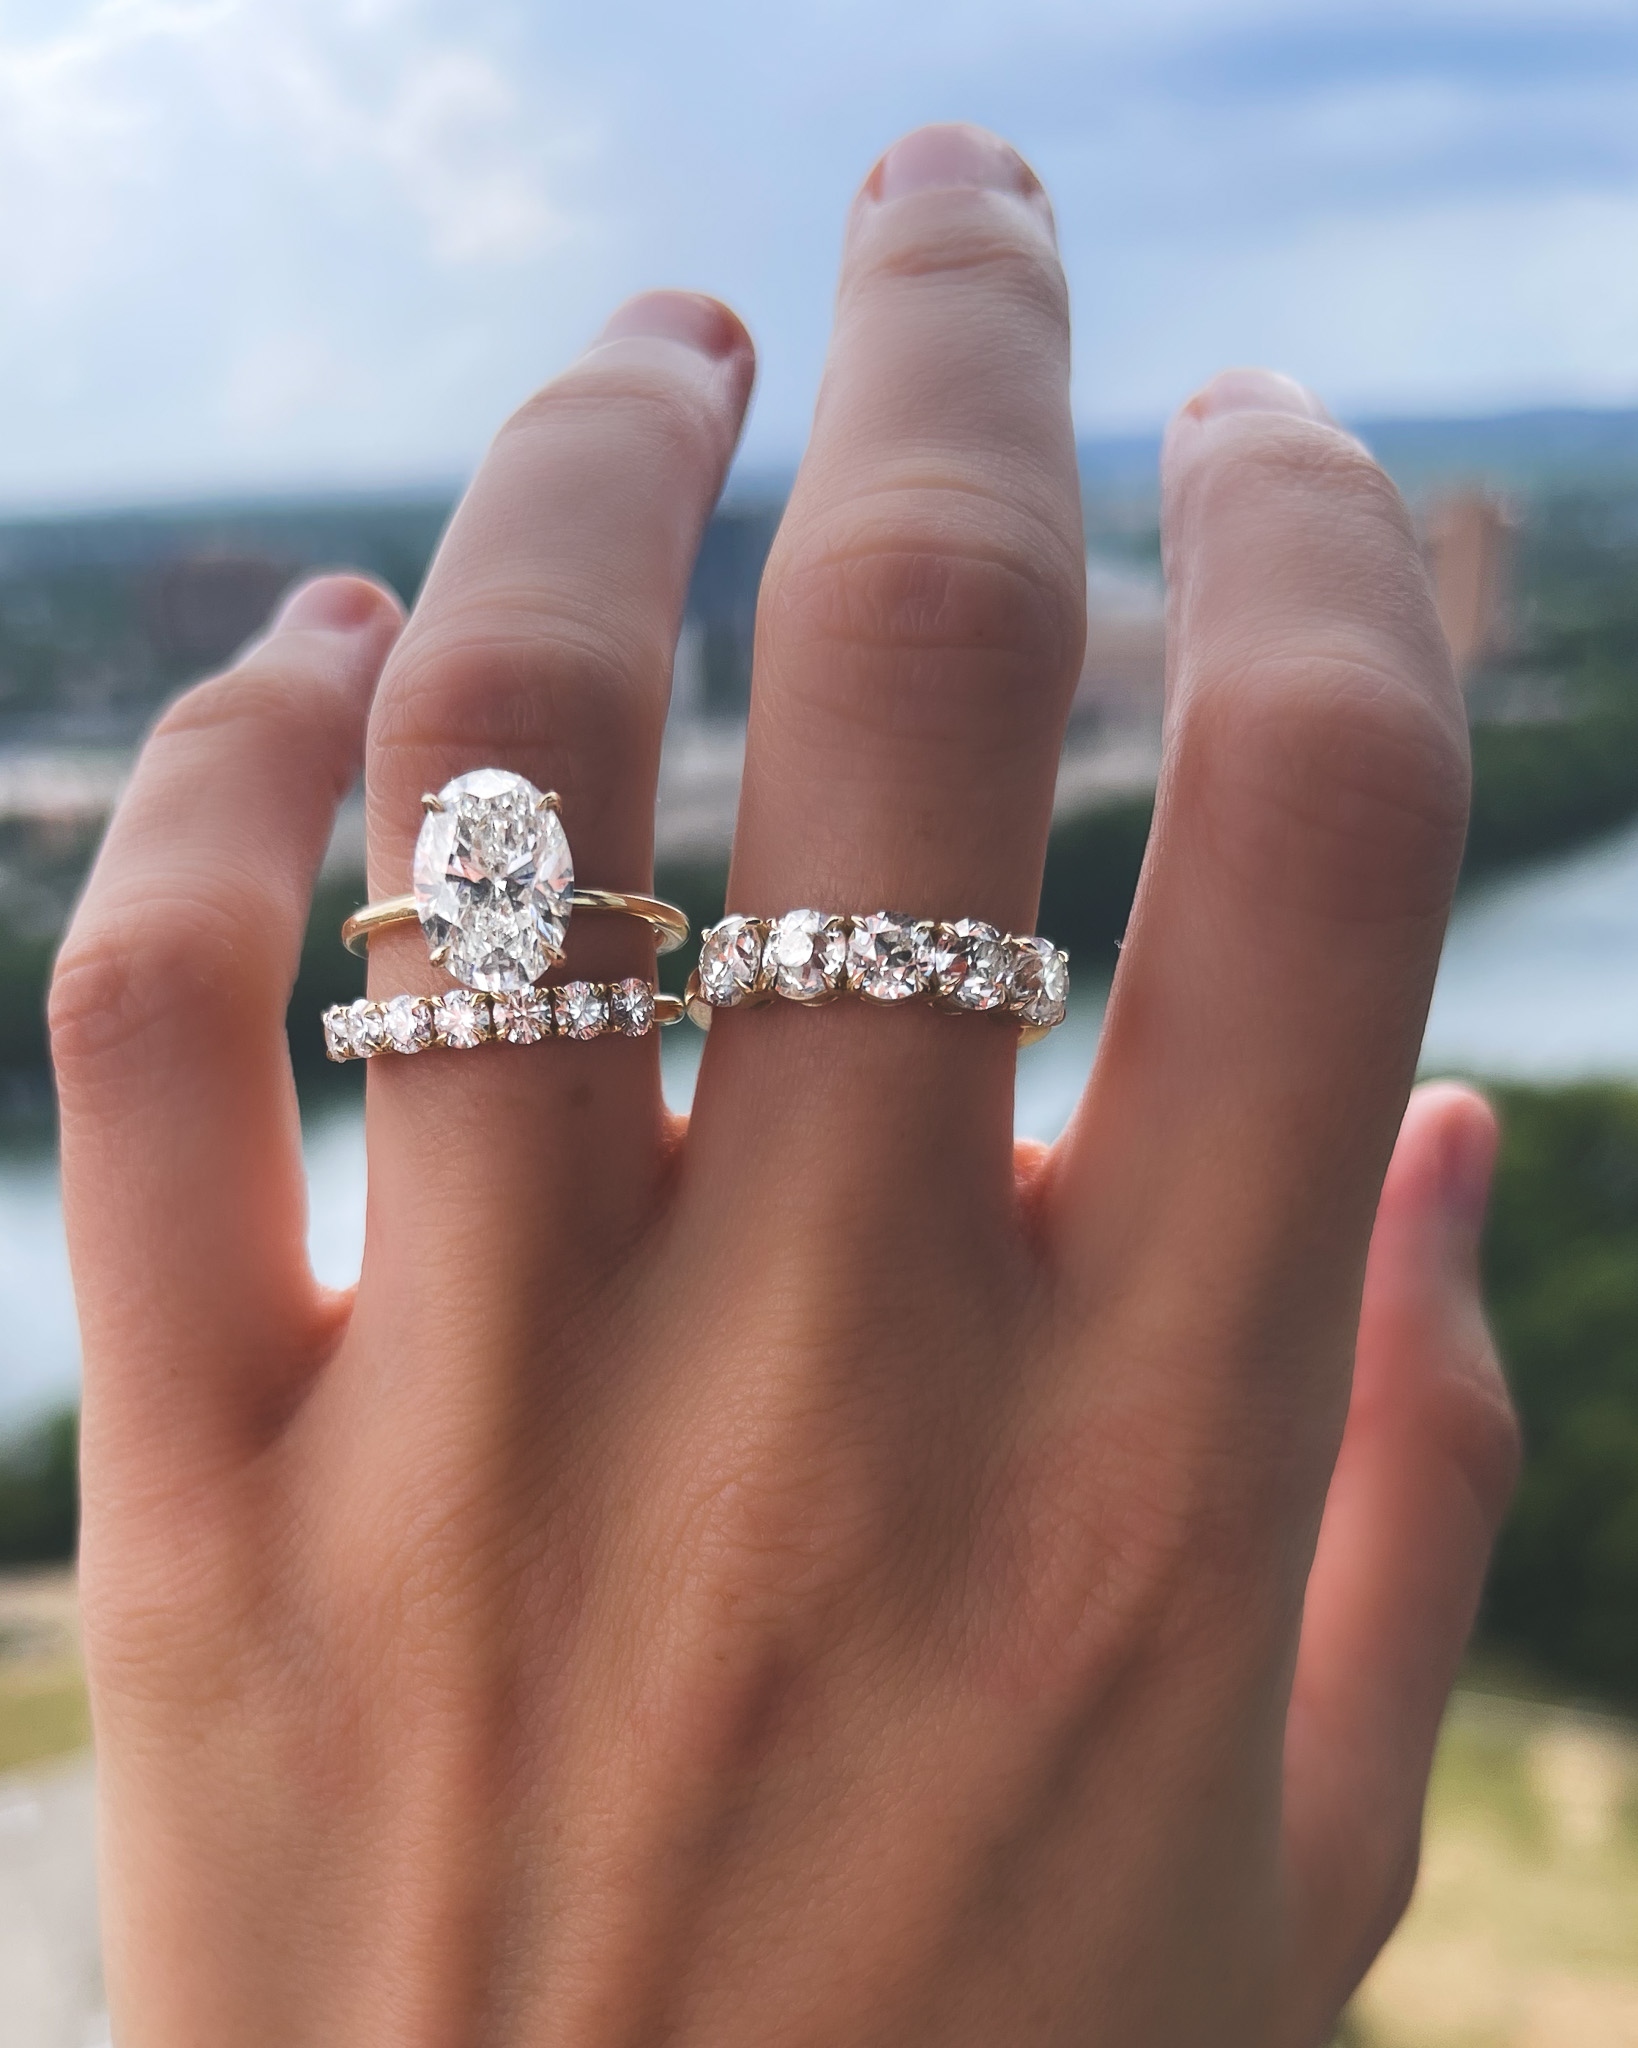 Una imagen impresionante que muestra la combinación perfecta de un anillo de compromiso ovalado con una alianza de boda. La alianza complementa perfectamente la forma ovalada del anillo de compromiso, creando una apariencia hermosa y cohesiva.